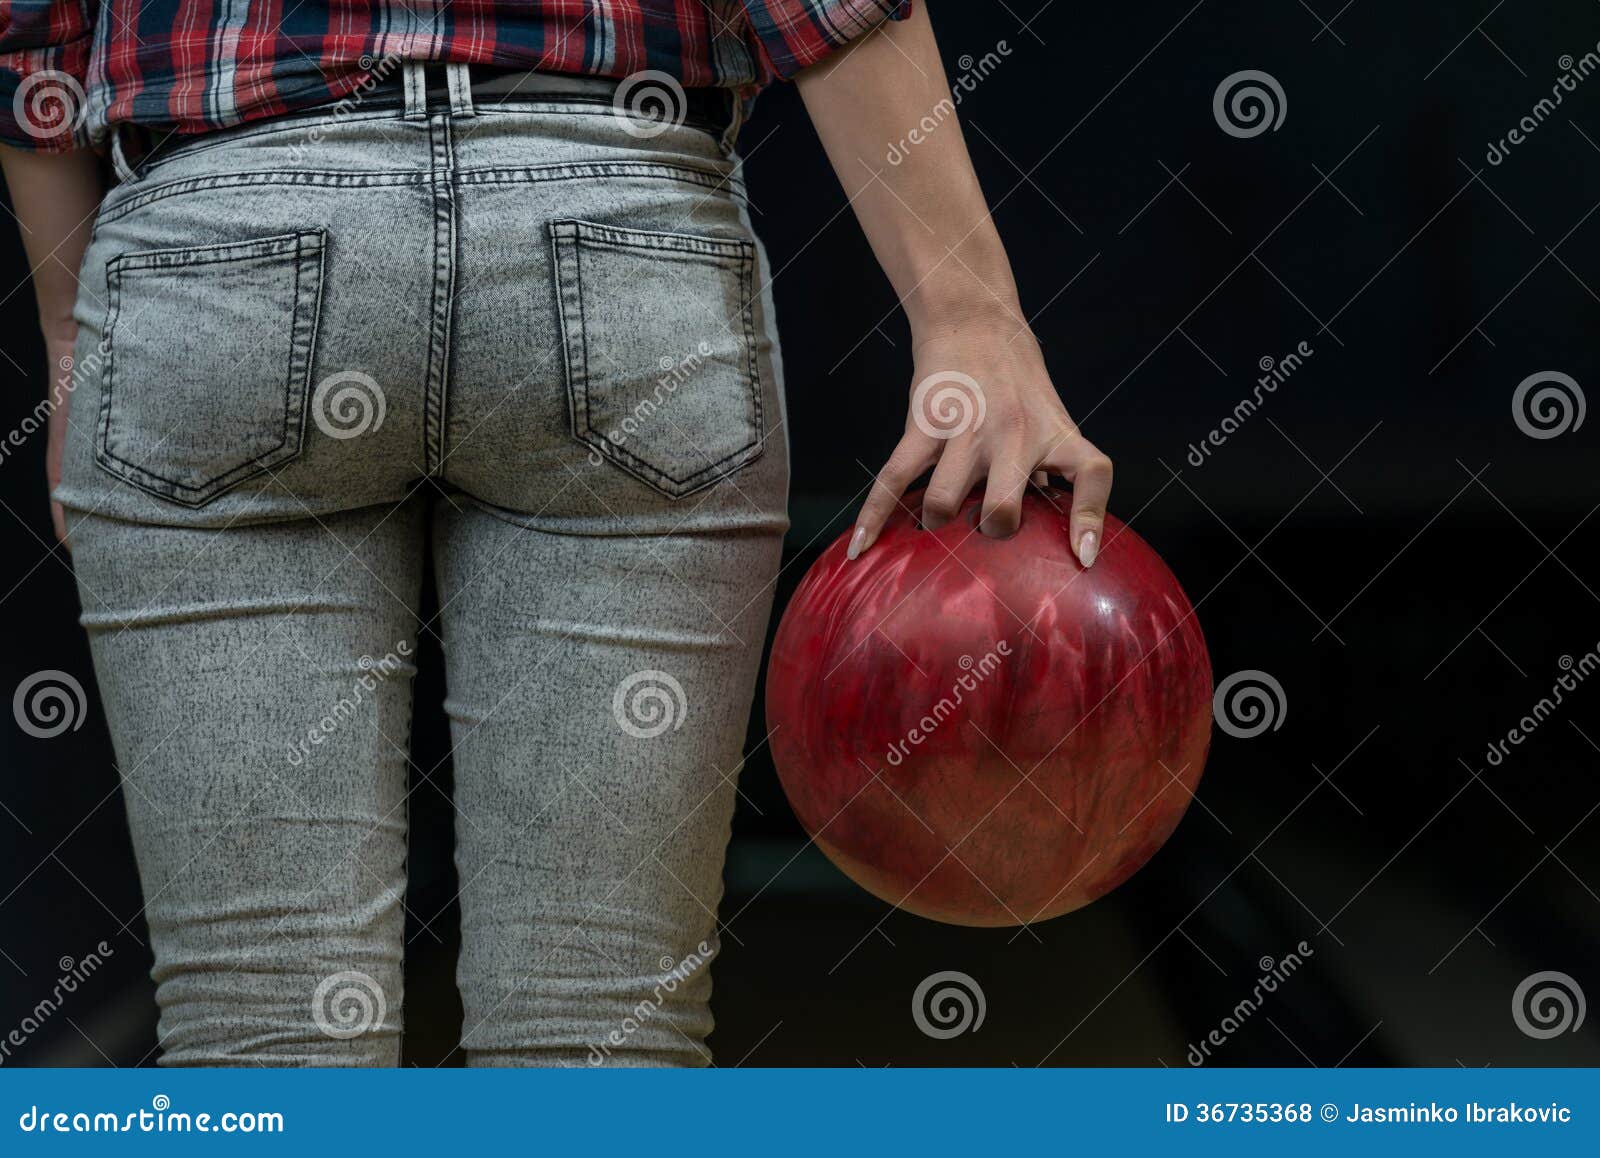 amber bree share bowling ball up ass photos